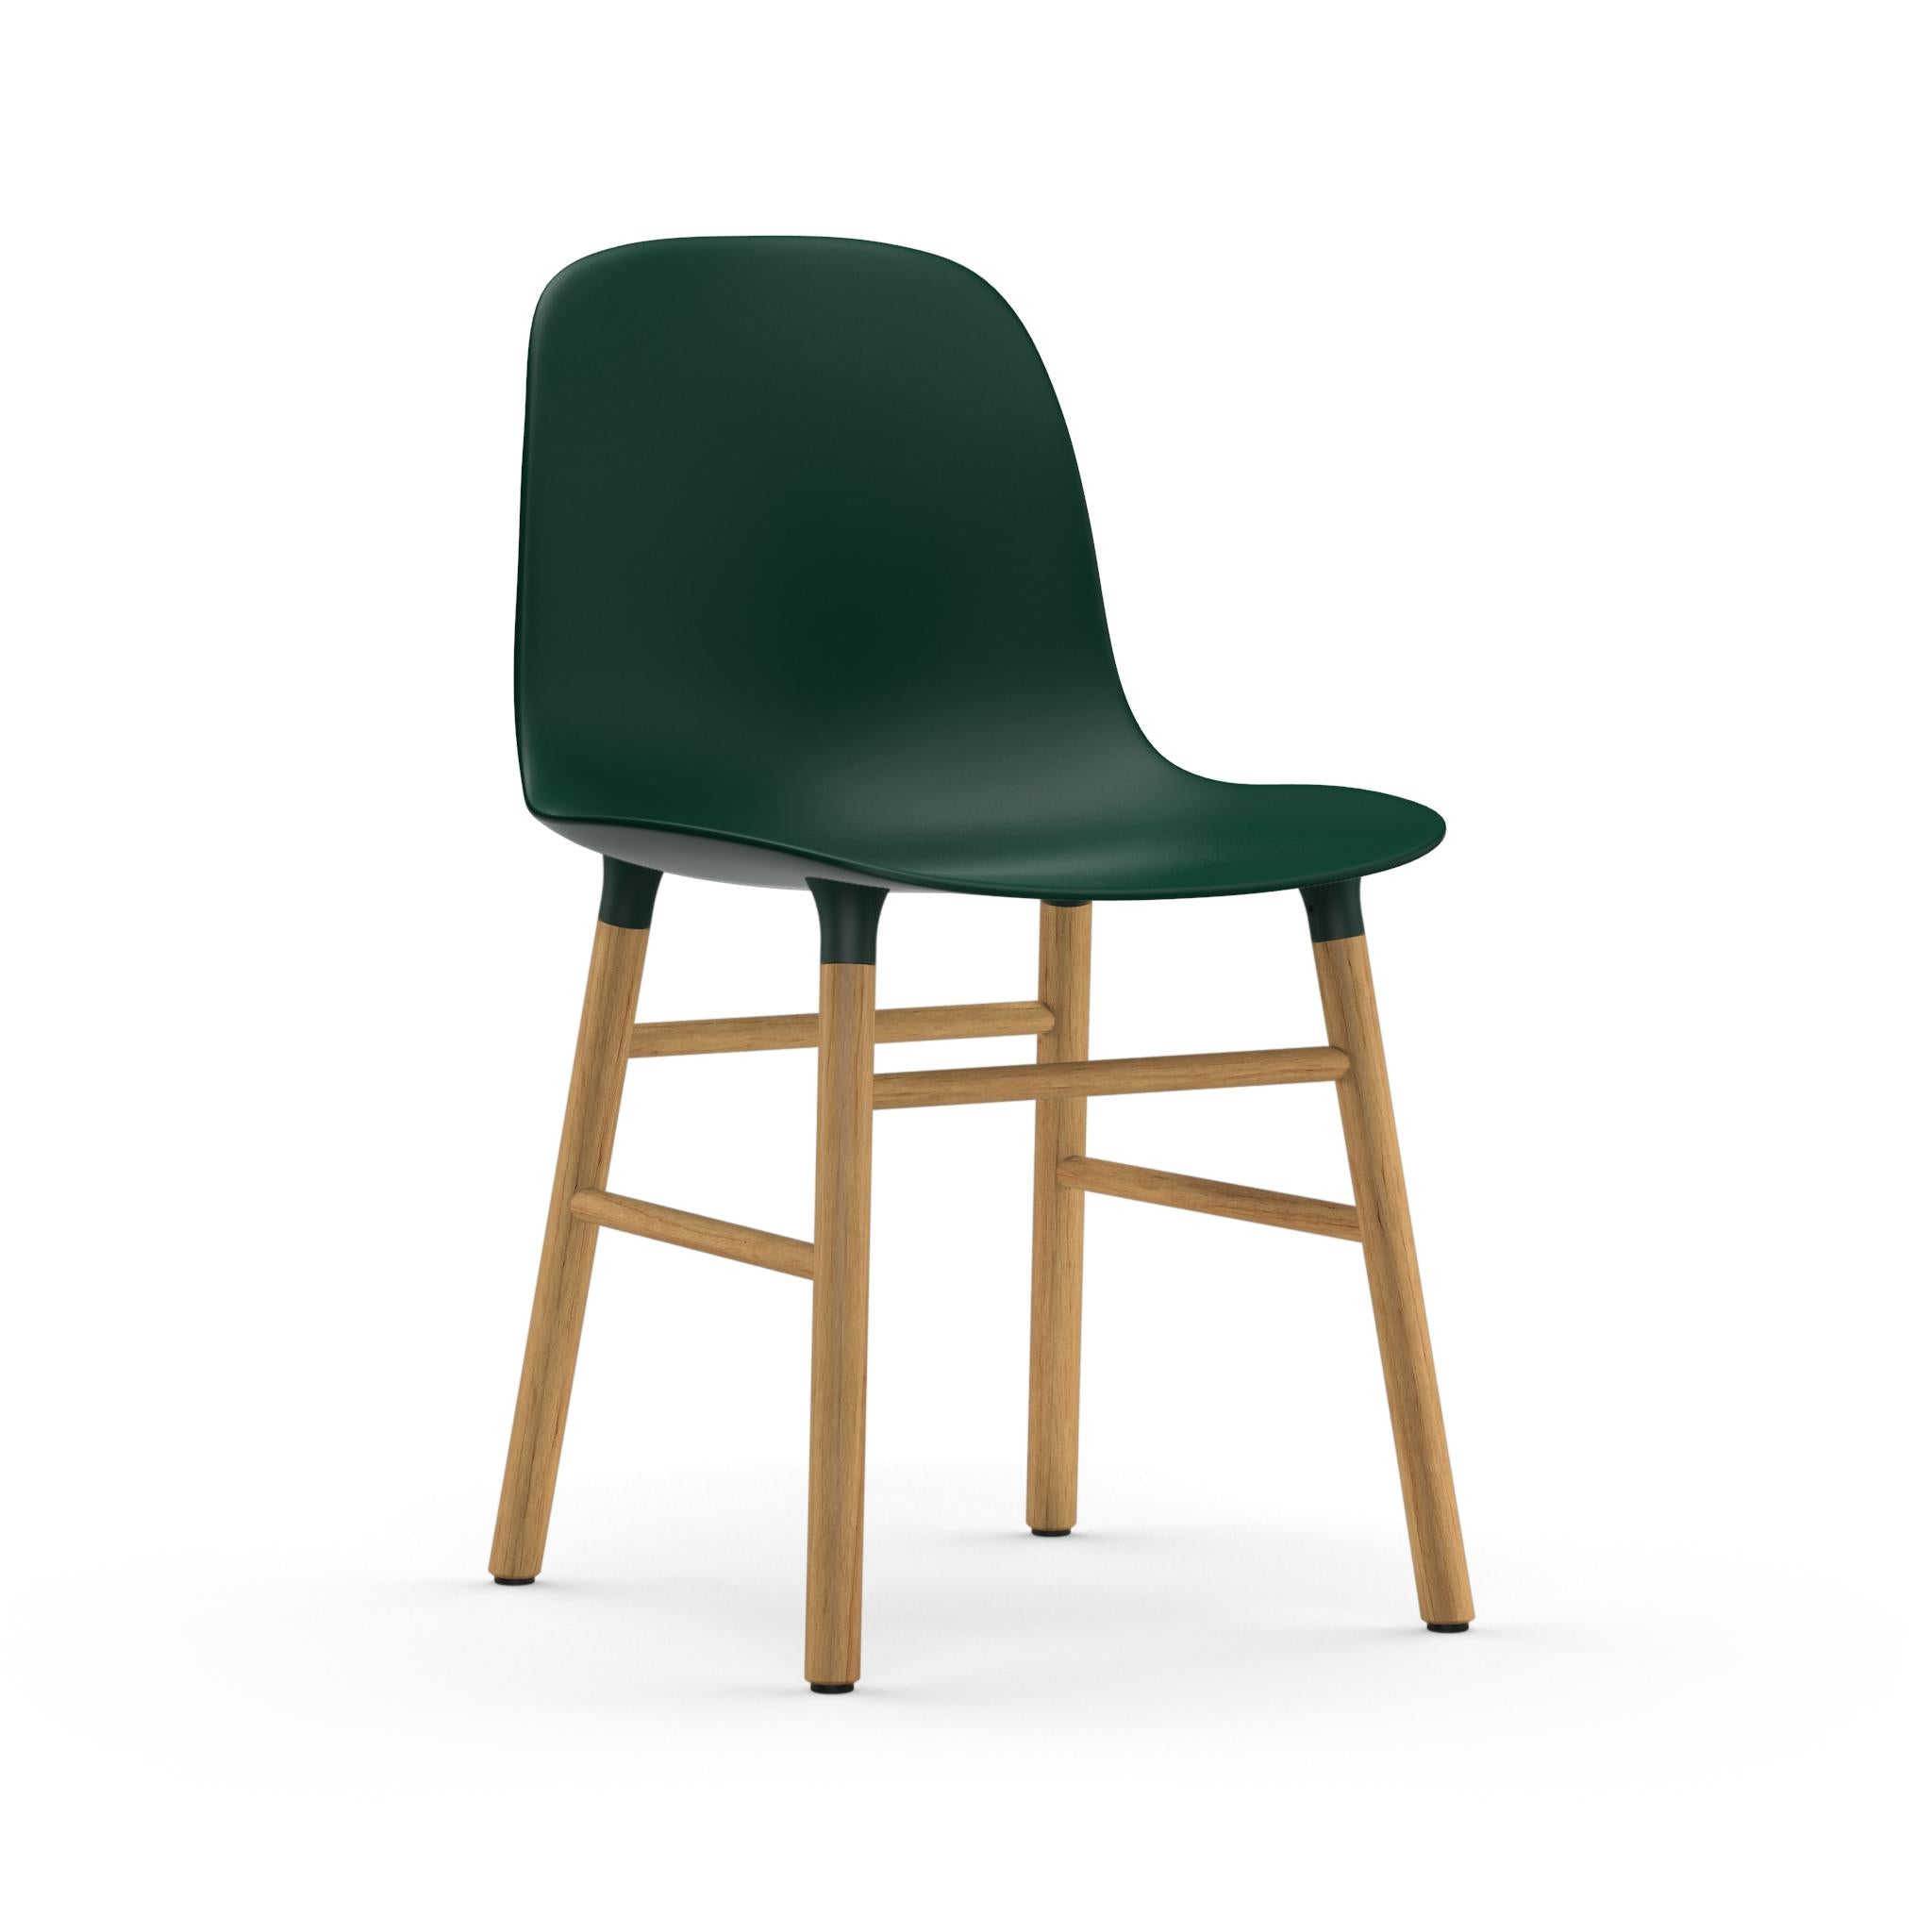 Form Chair - Eiche